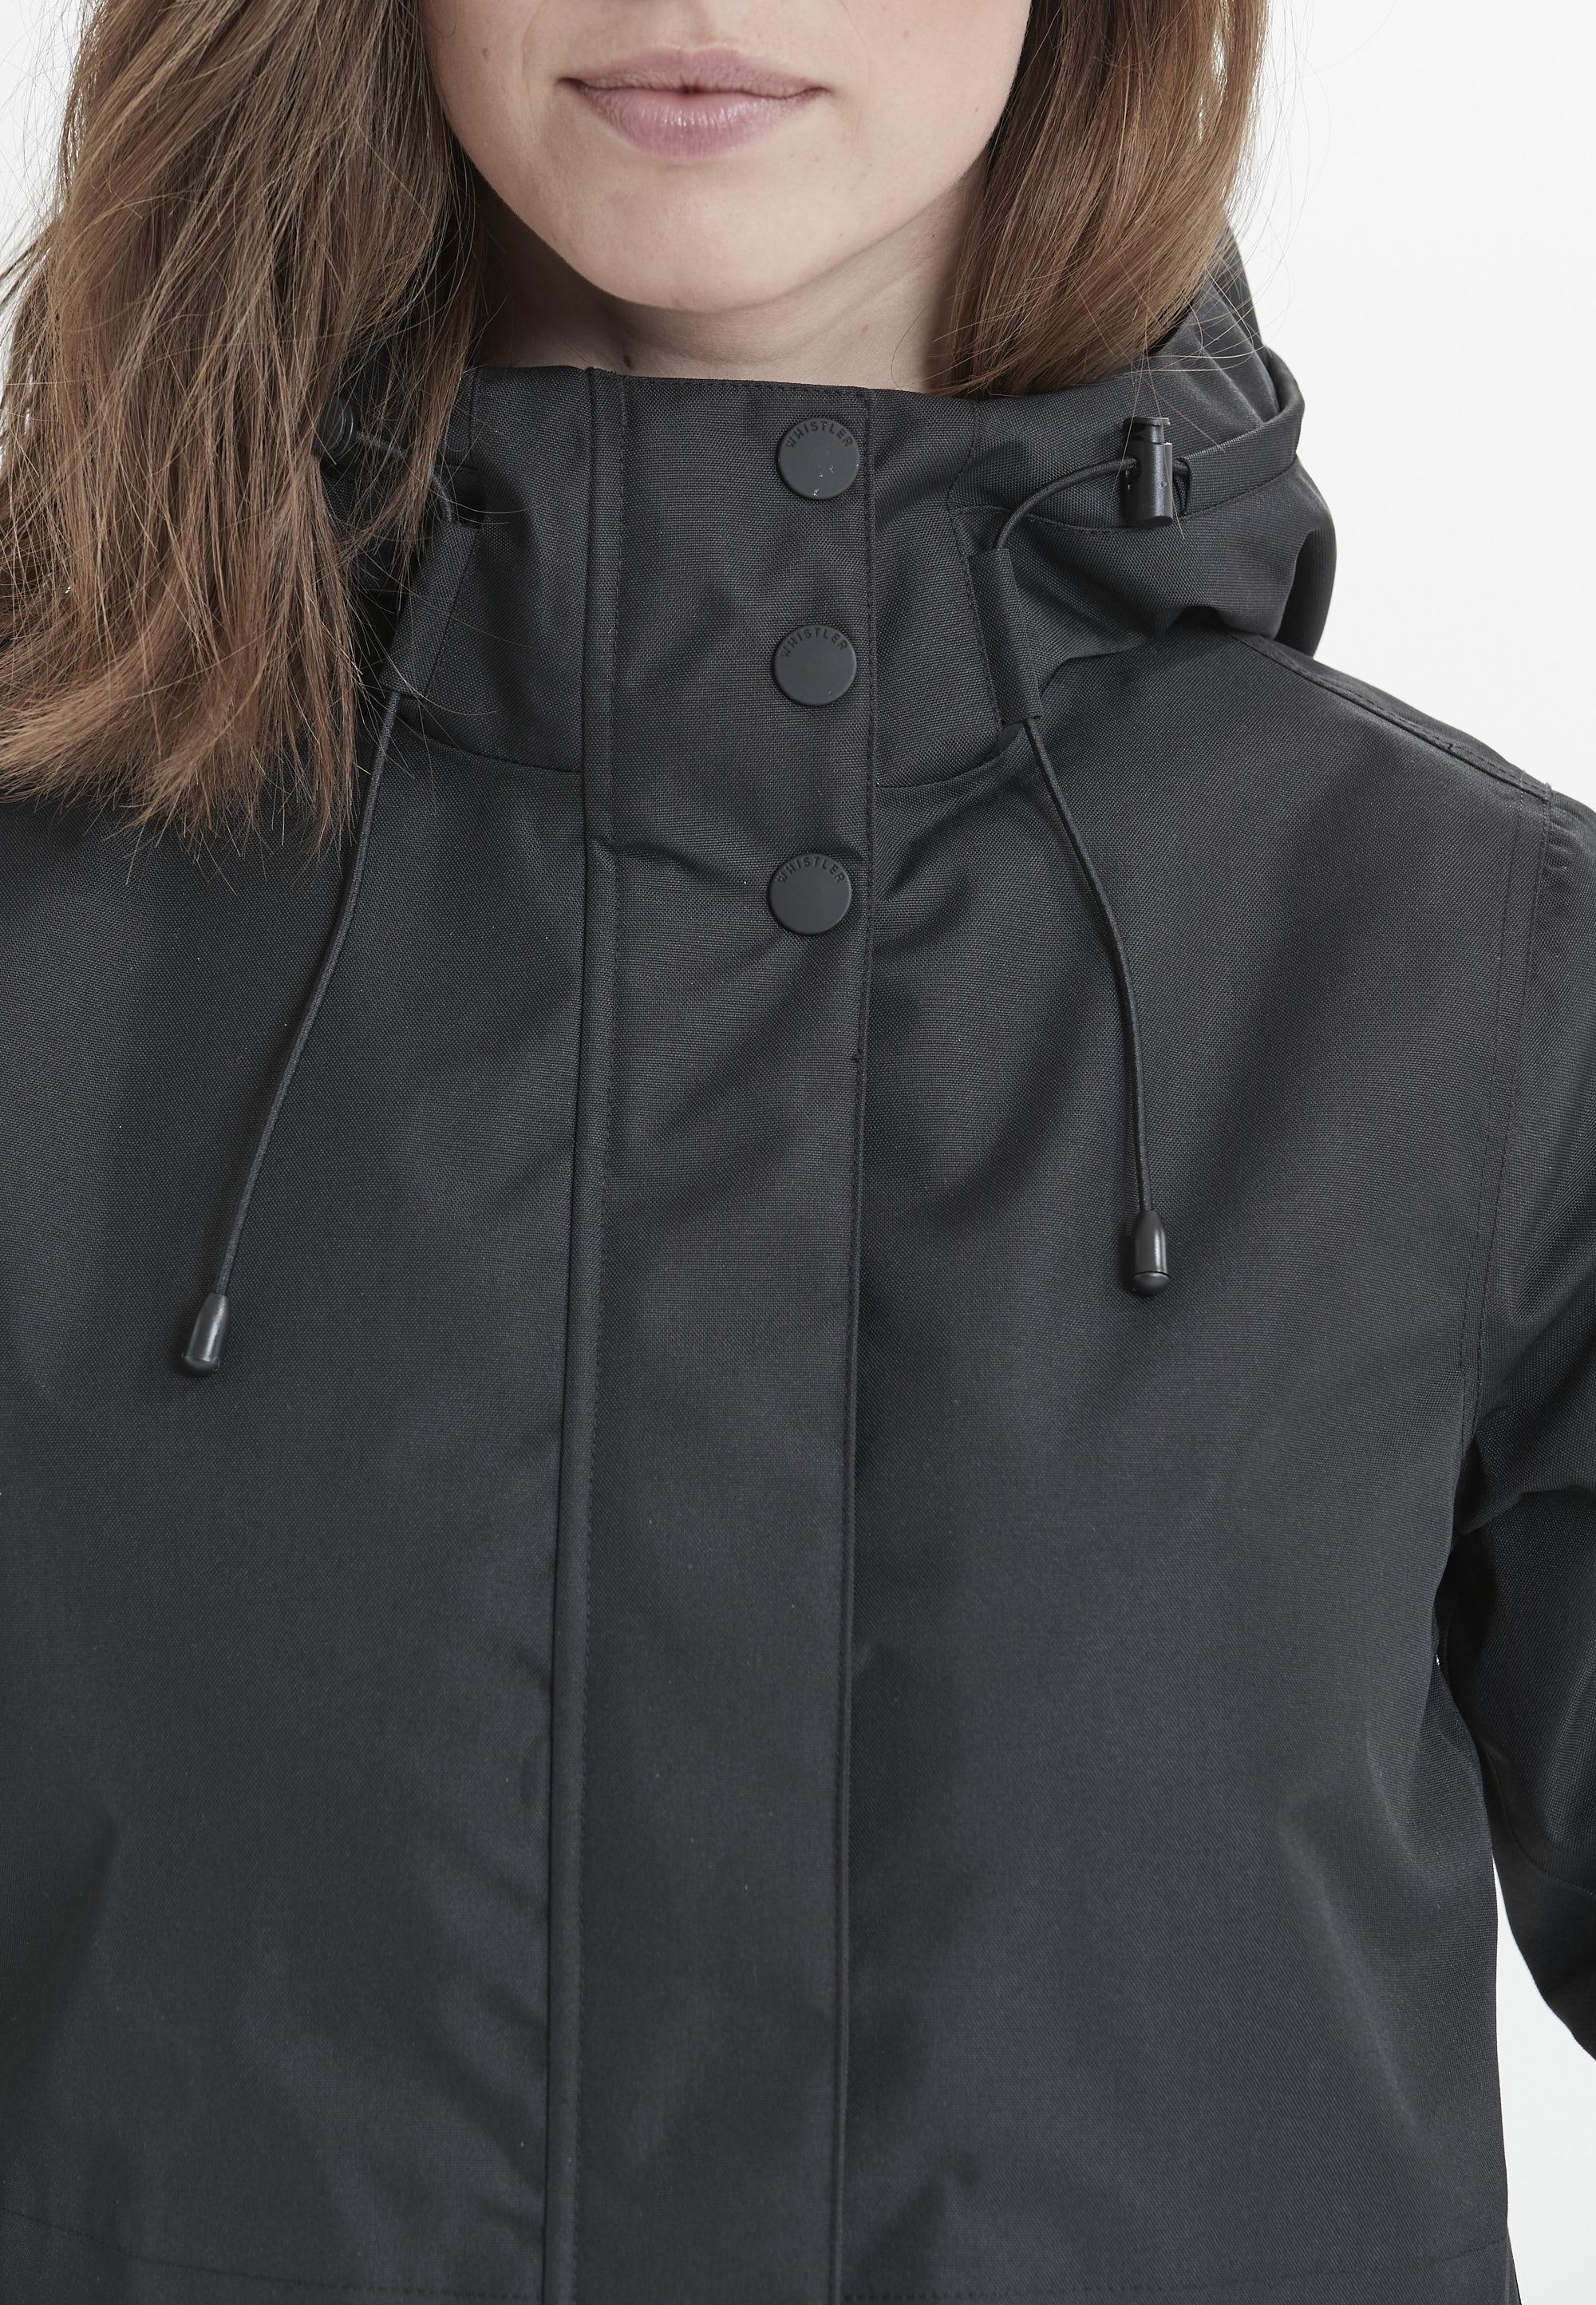 Whistler Mullie Regenjacke Damen 1001 Black im Online Shop von SportScheck  kaufen